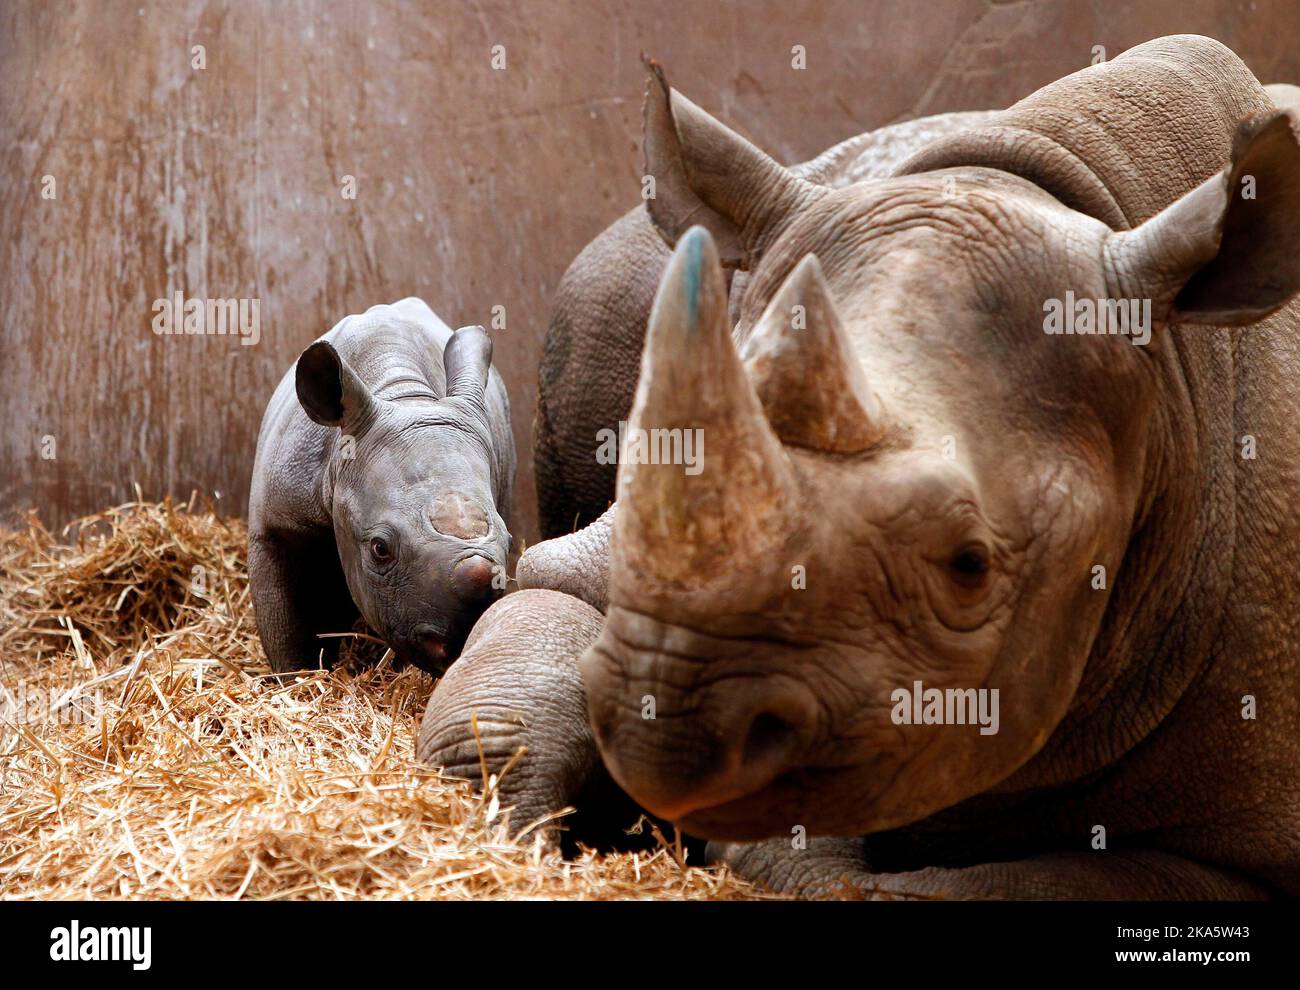 Photo de dossier datée du 12/03/13 d'un rhinocéros noir avec son bébé au zoo de Chester. Une étude récente menée par des scientifiques montre que les cornes de rhinocéros de toutes les espèces ont graduellement diminué au cours du siècle dernier et que la chasse pourrait en être la cause probable. Date de publication : mardi 1 novembre 2022. Banque D'Images